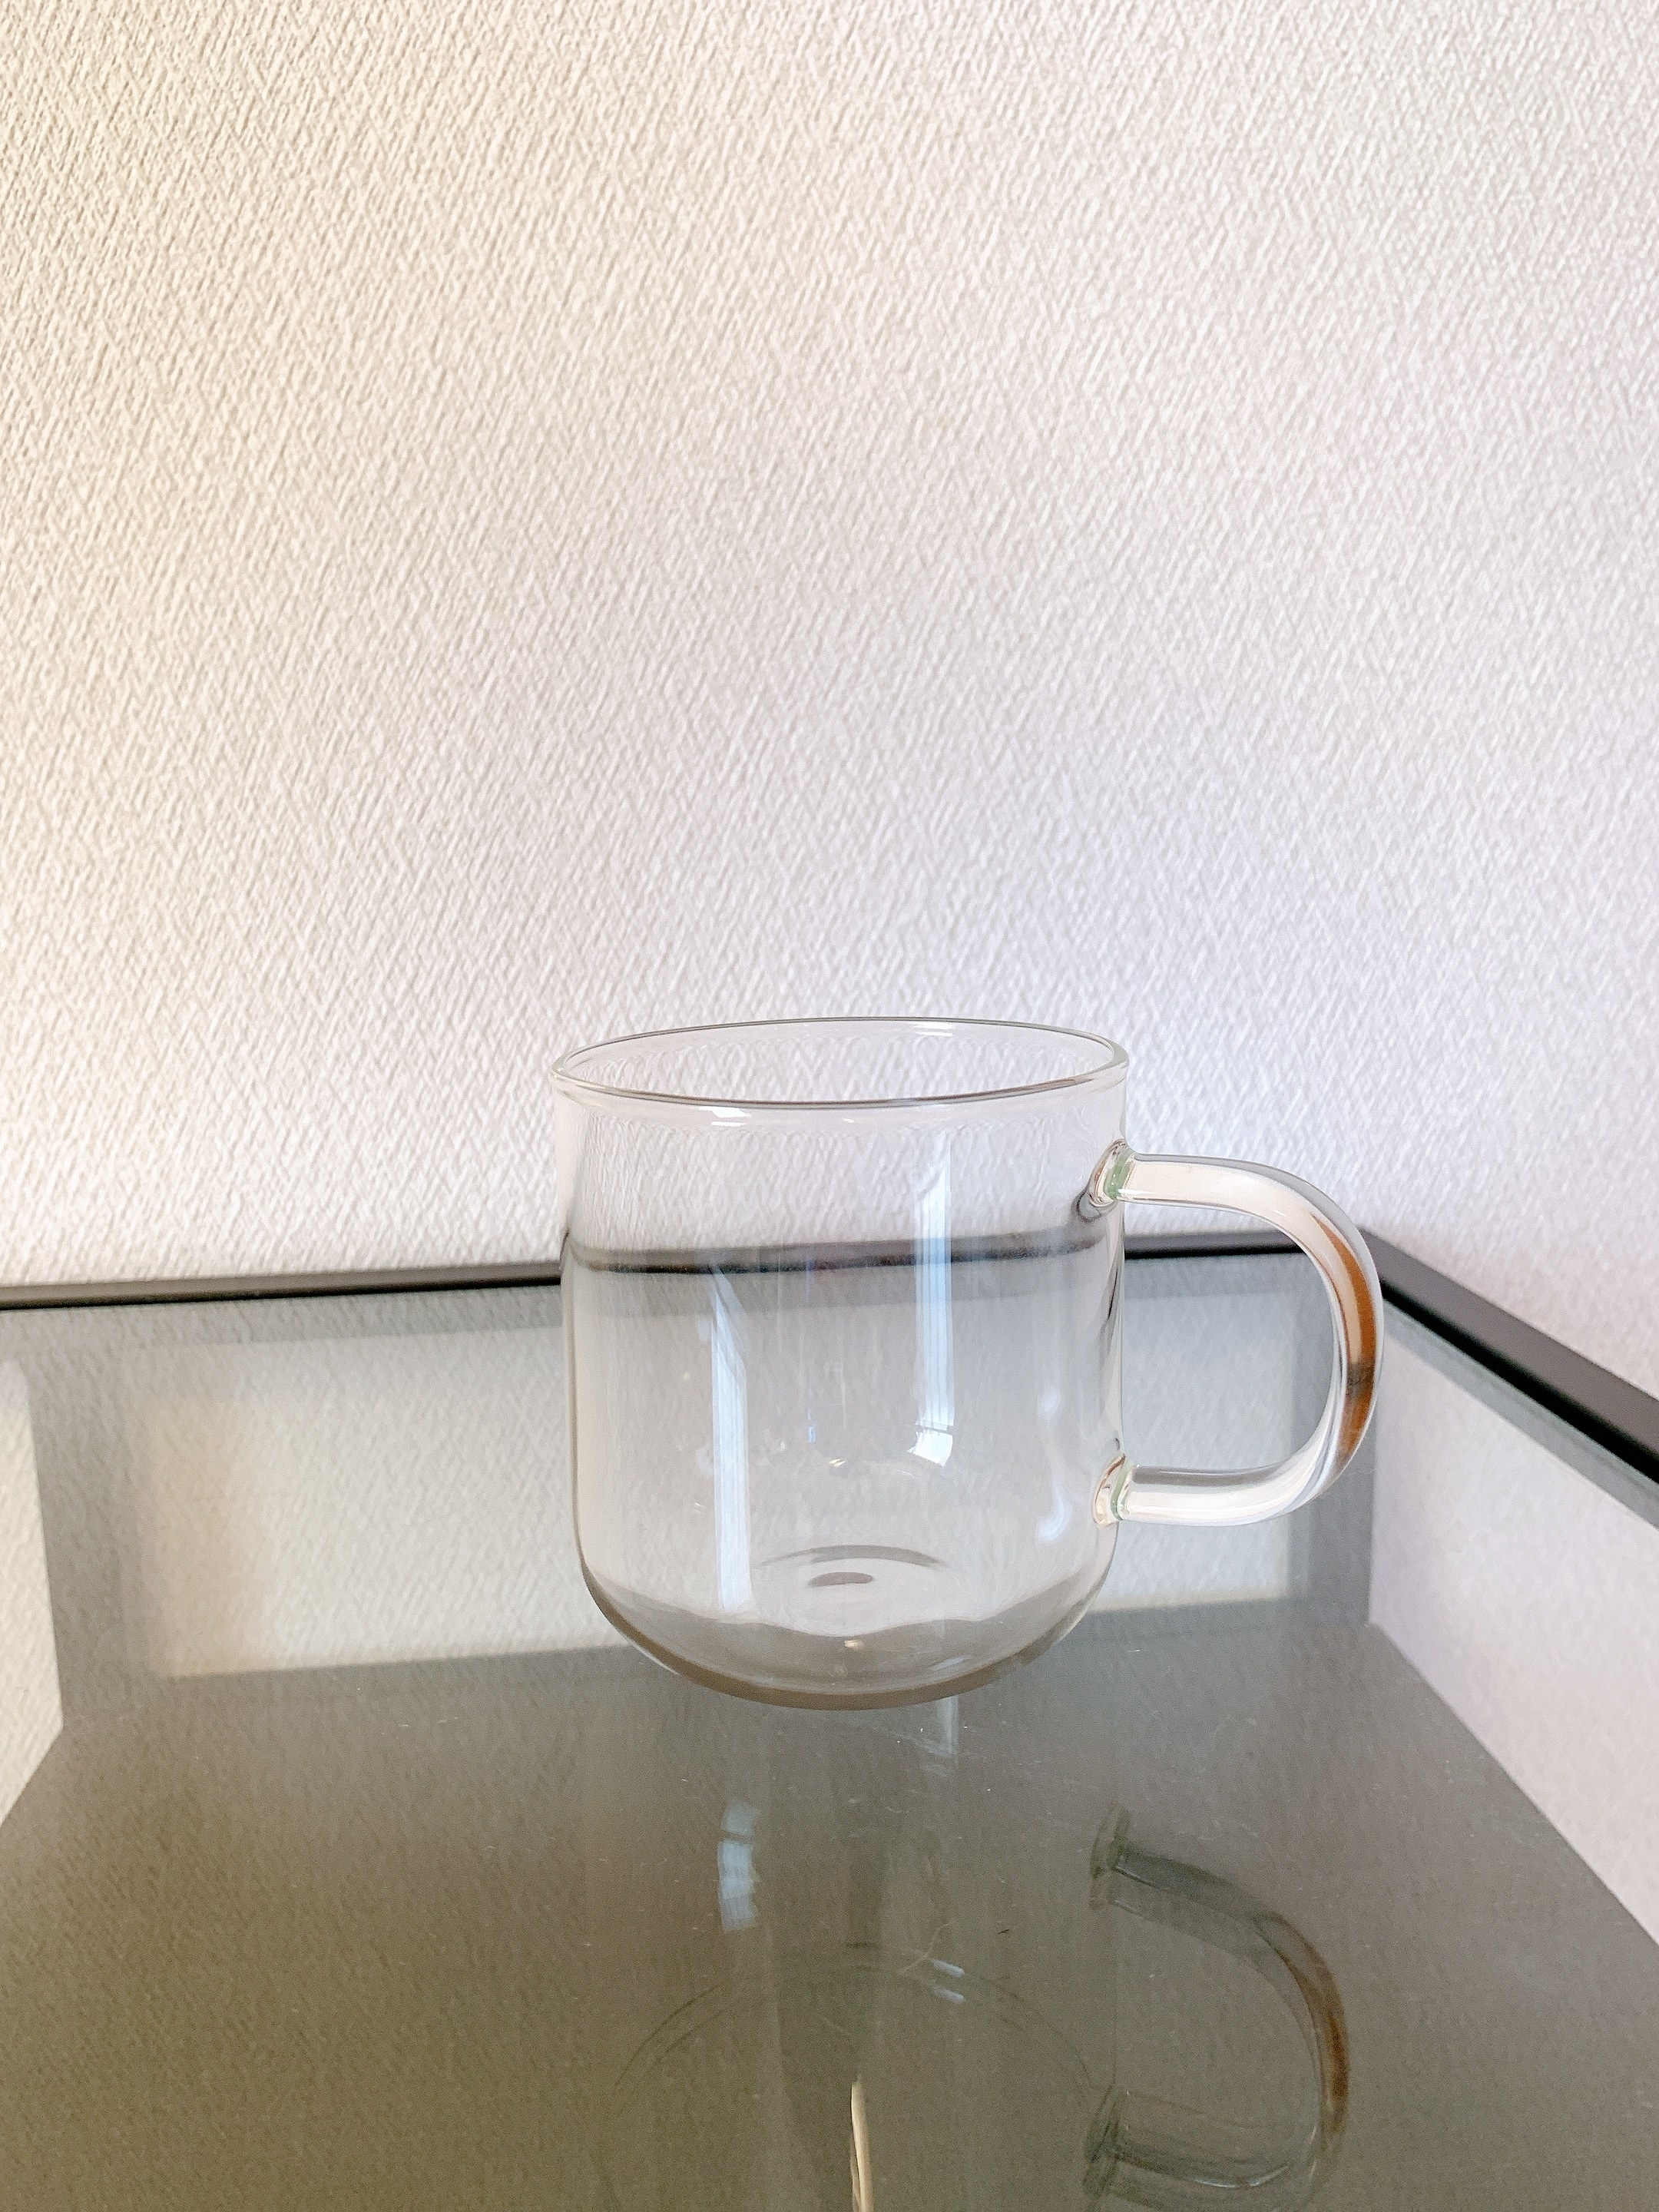 無印良品のオススメのグラス「耐熱ガラス マグカップ」